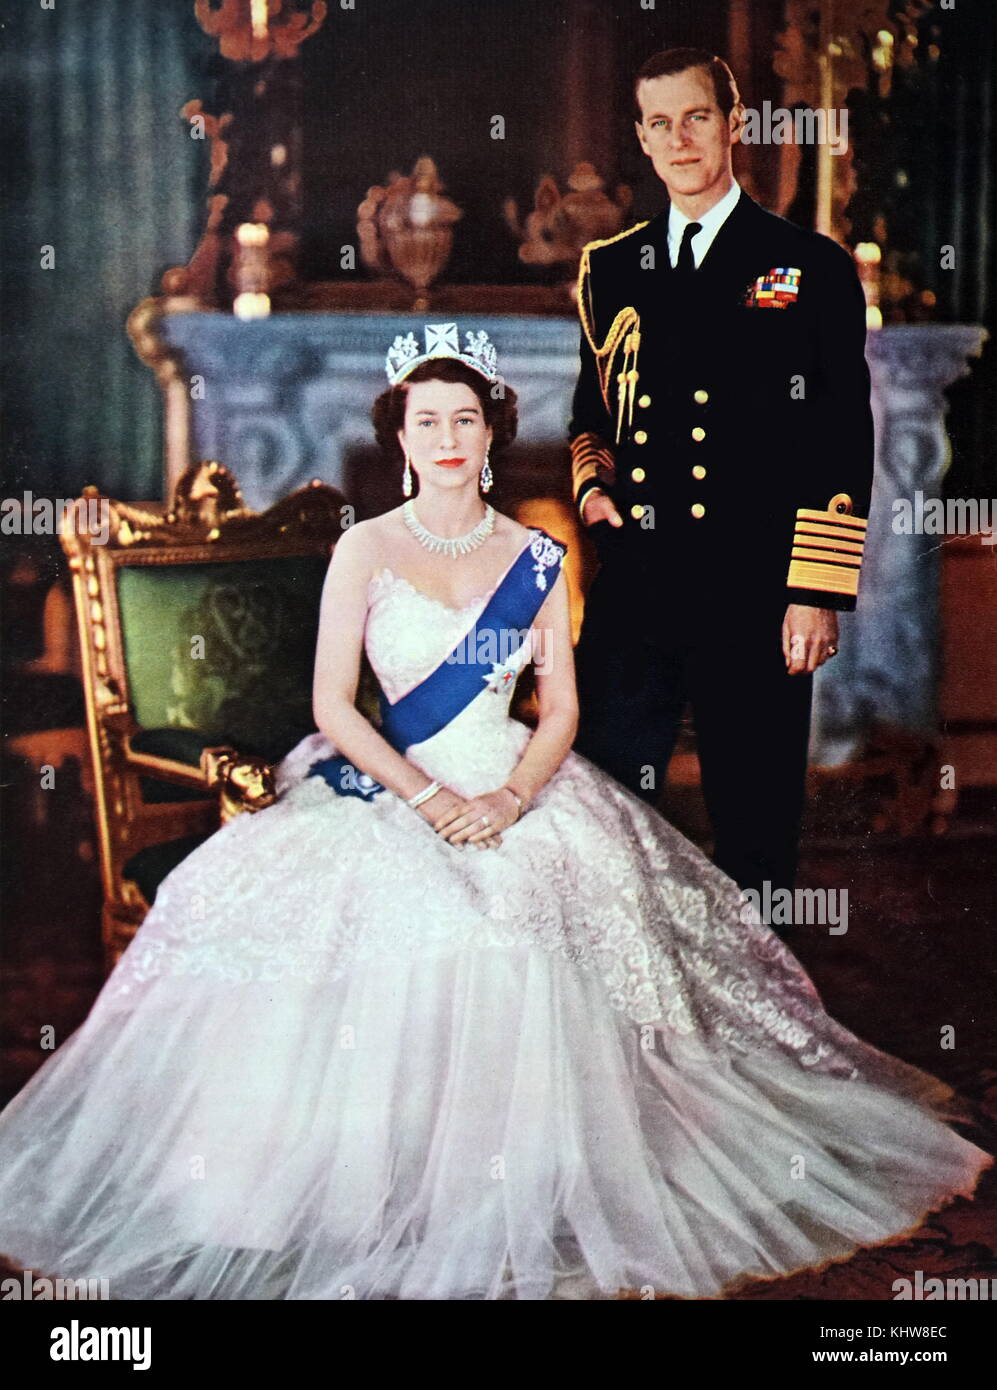 Retrato fotográfico de la Reina Elizabeth II (1926-) y su consorte el Príncipe Felipe, Duque de Edimburgo (1921-). Fecha Siglo XX Foto de stock